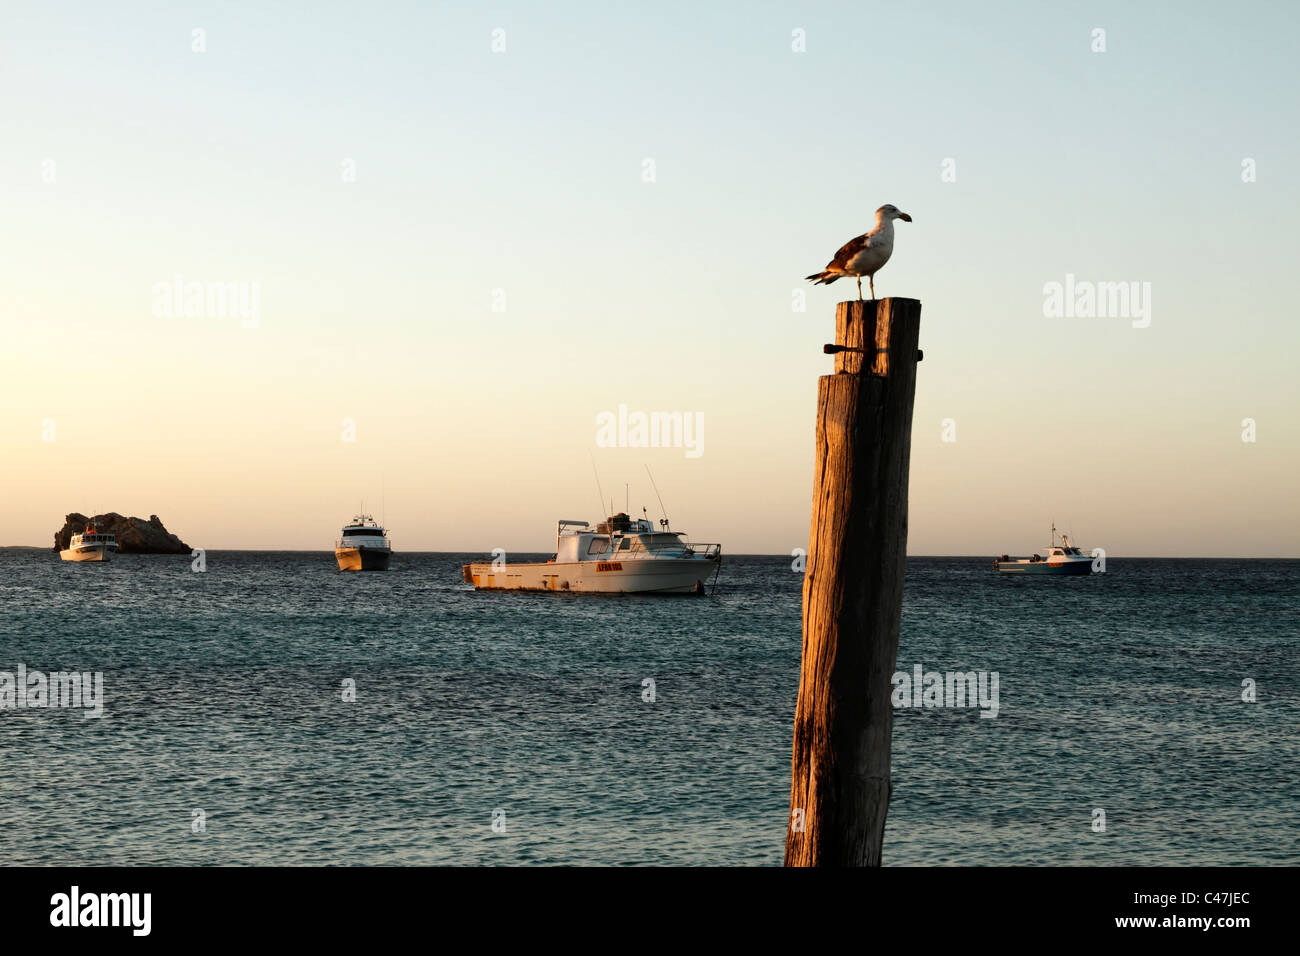 Fishing Boats at anchor, Hamlin Bay, Southwest Australia Stock Photo